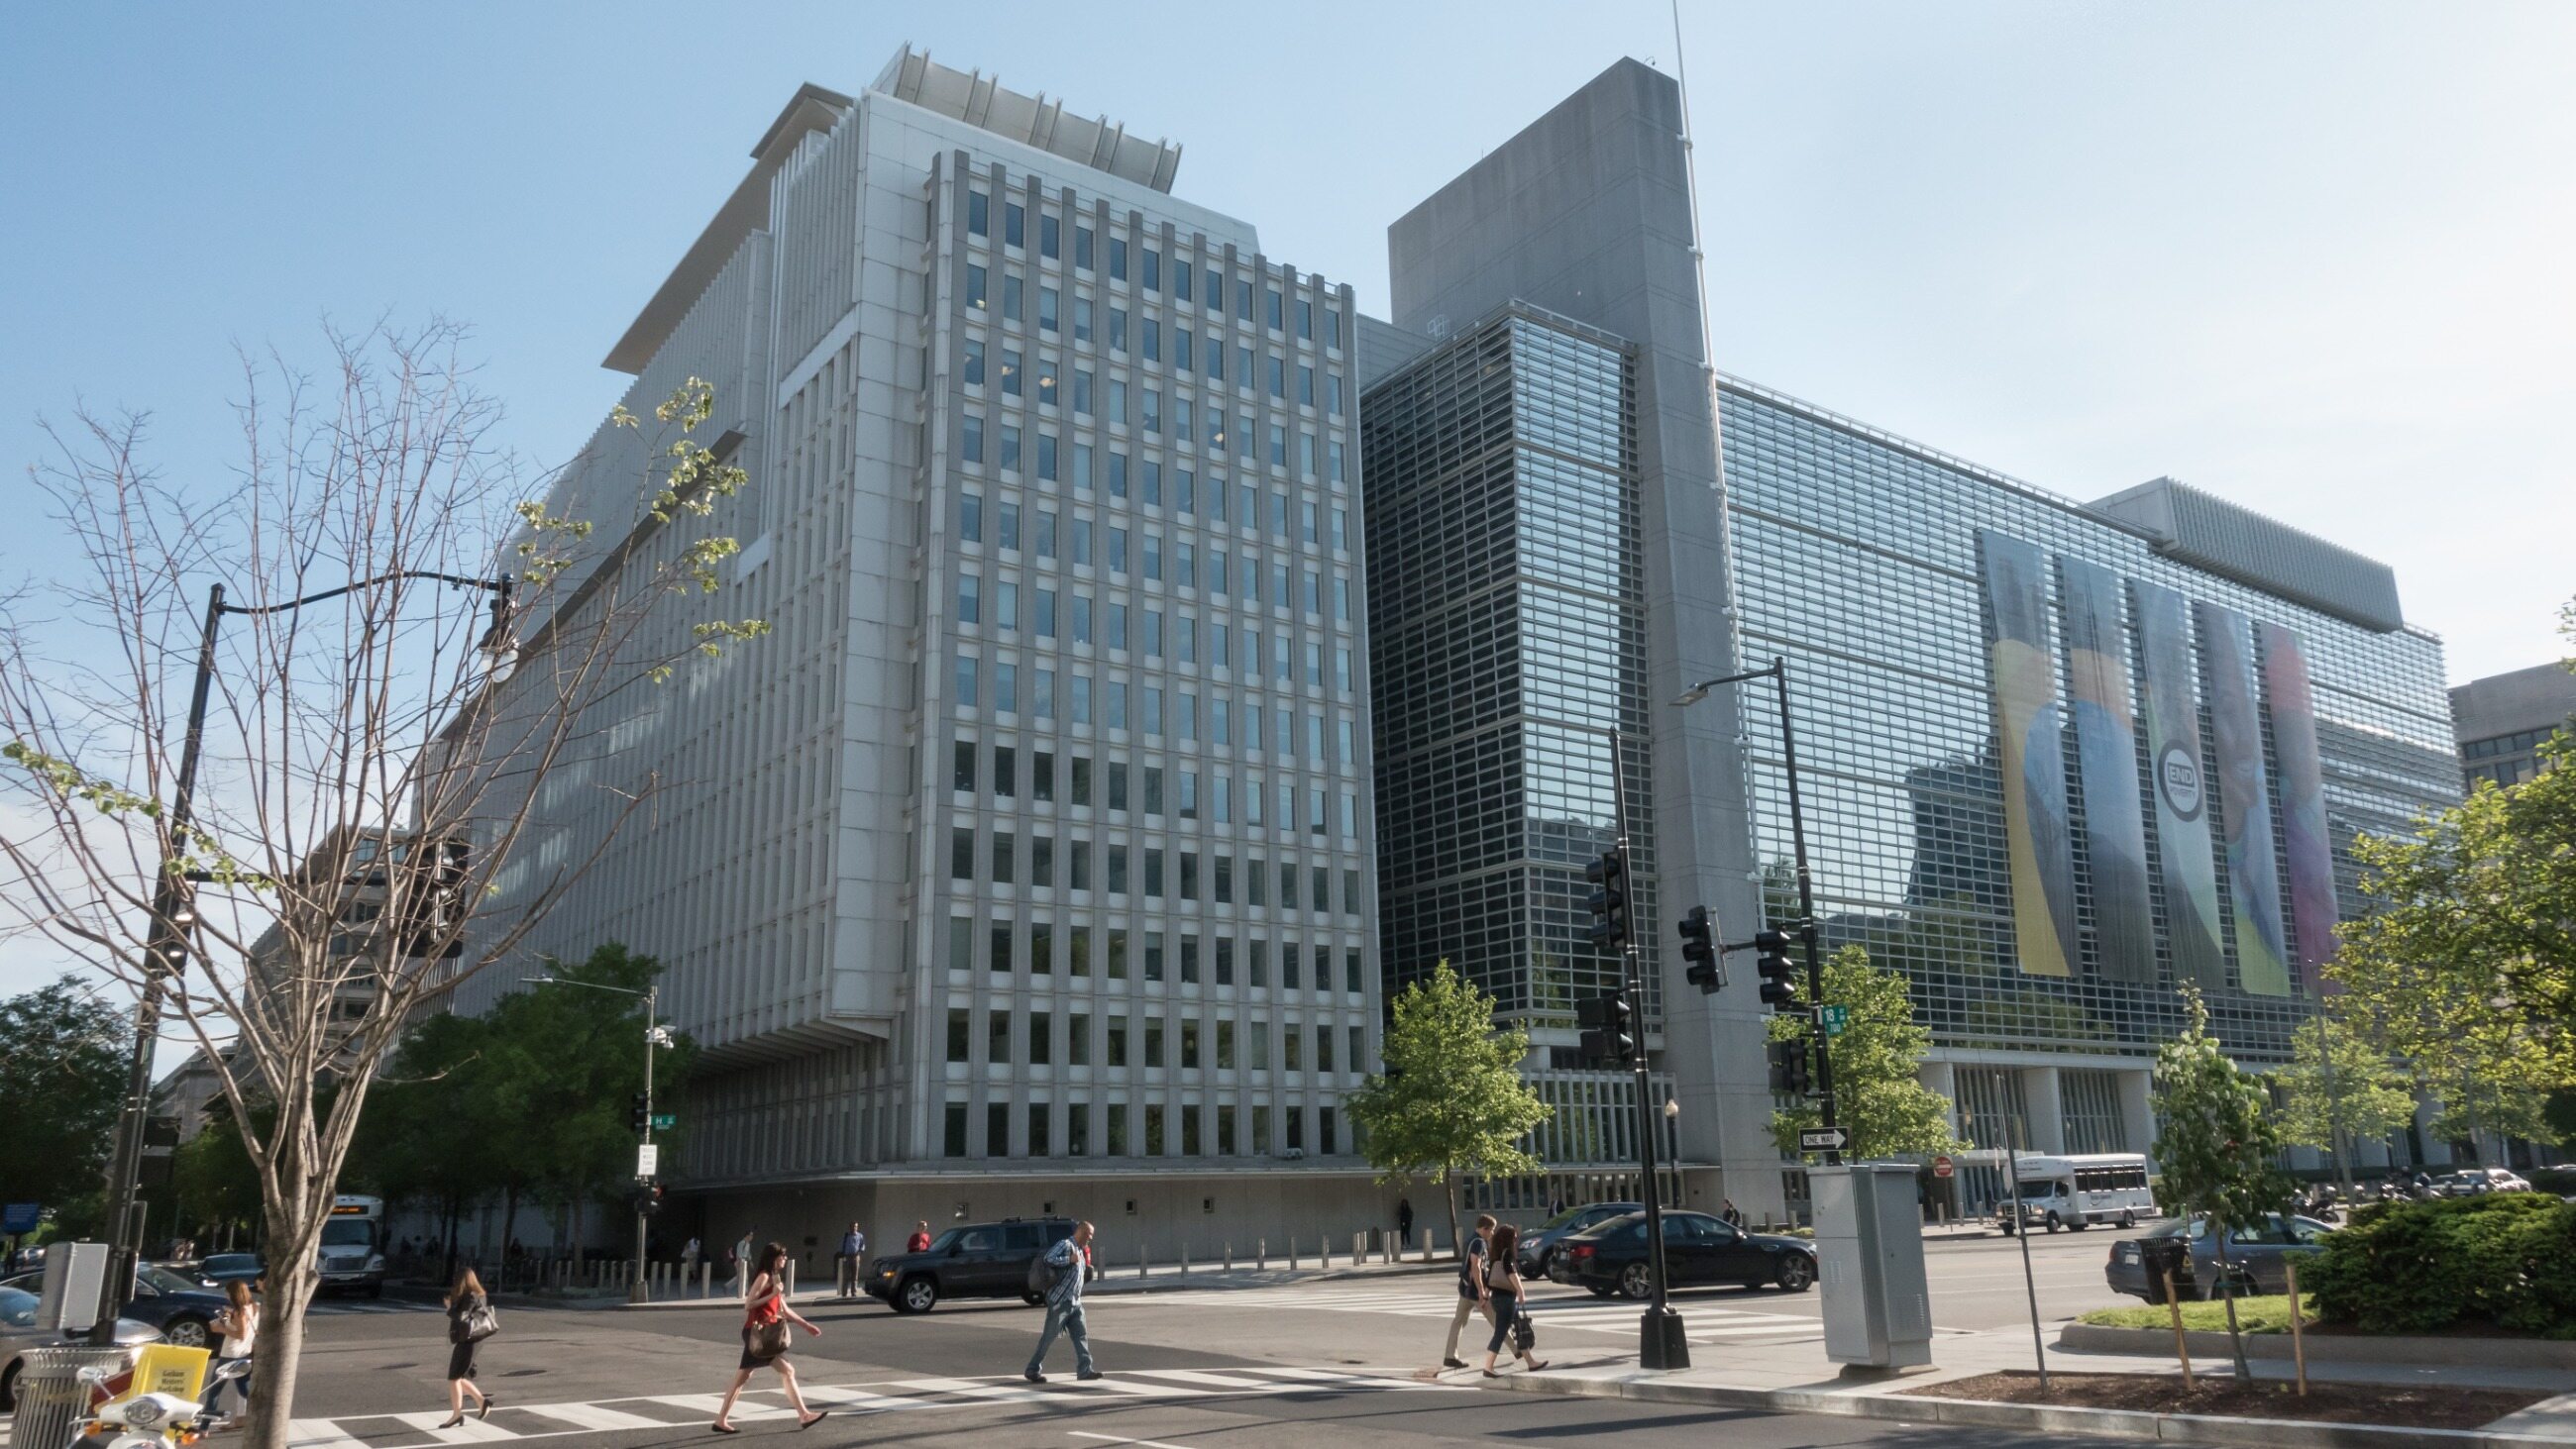 4 всемирный банк. Всемирного банка (the World Bank). Всемирный банк Вашингтон. Группа Всемирного банка штаб квартира. Штаб-квартира Всемирного банка в Вашингтоне.